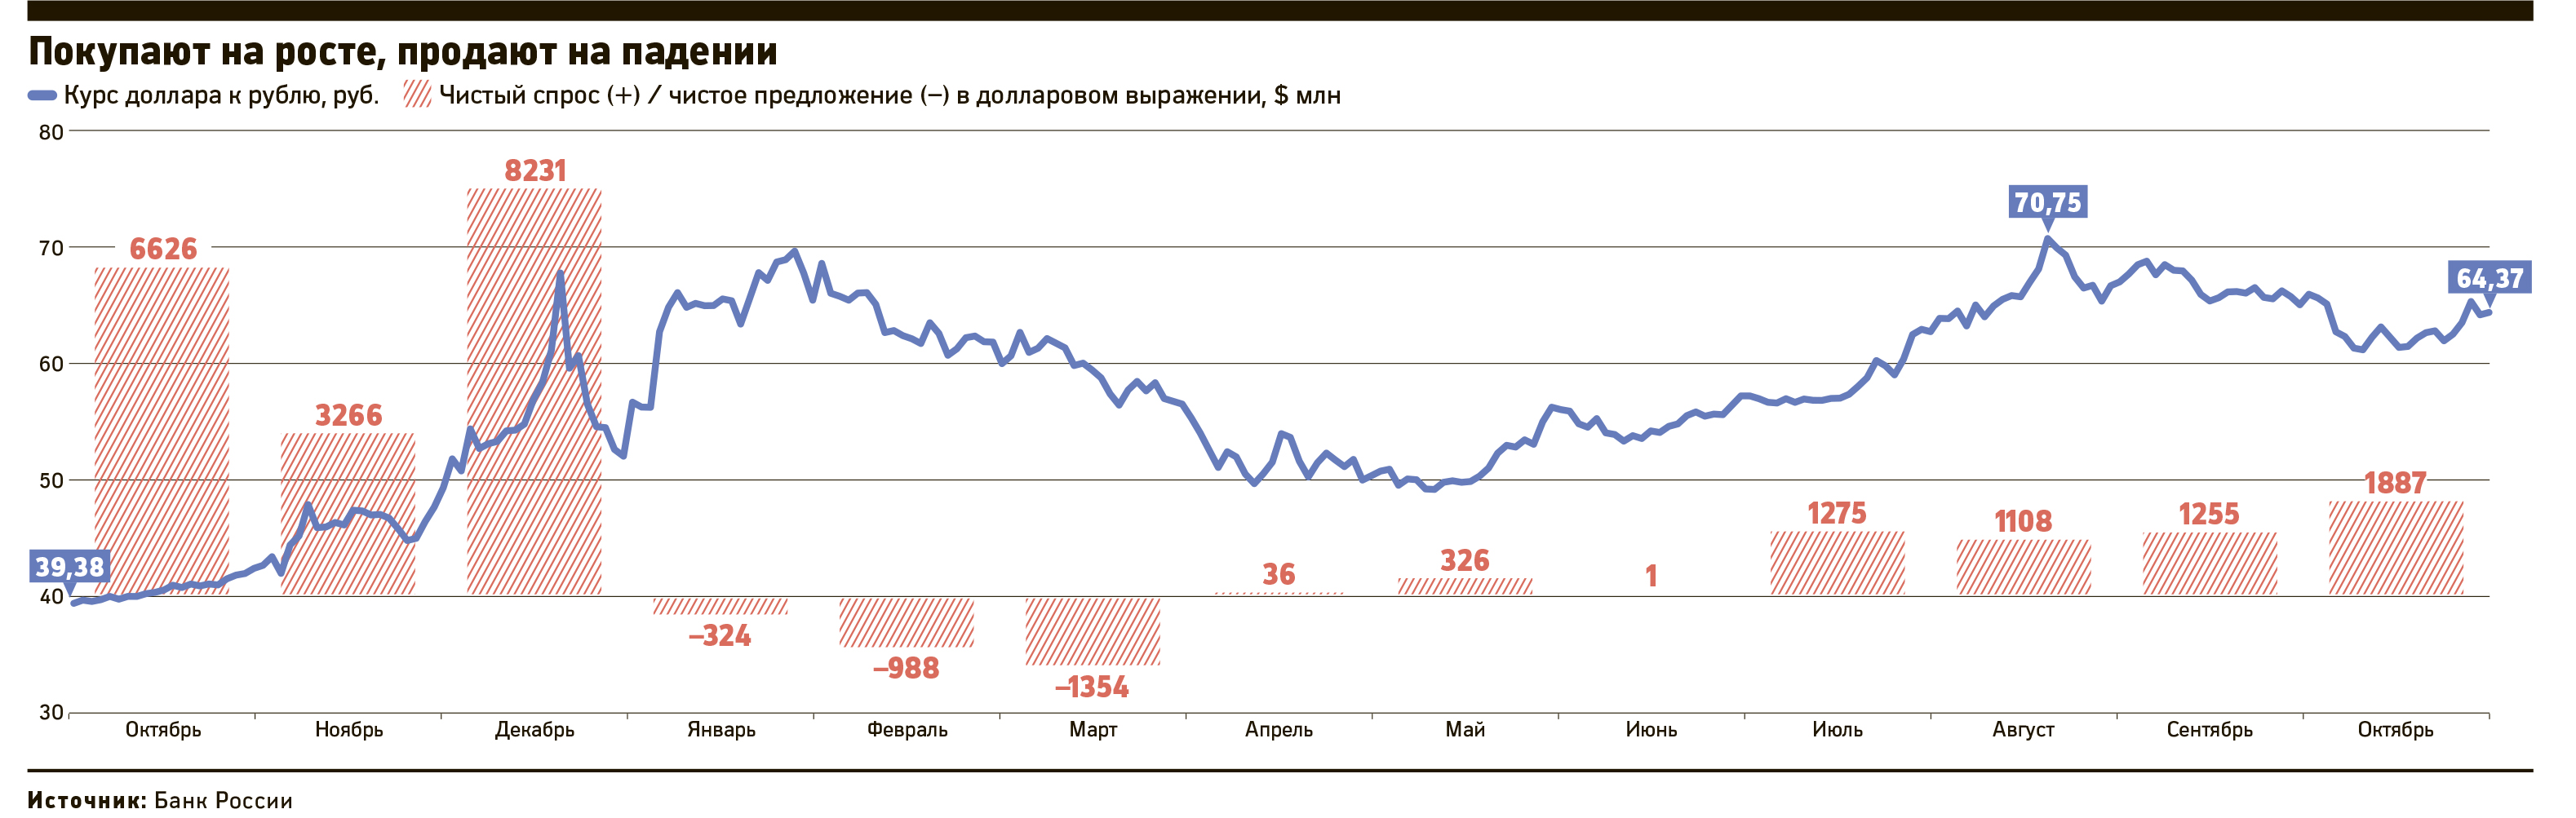 Купили вовремя: в октябре чистый спрос россиян на валюту вырос на 50%